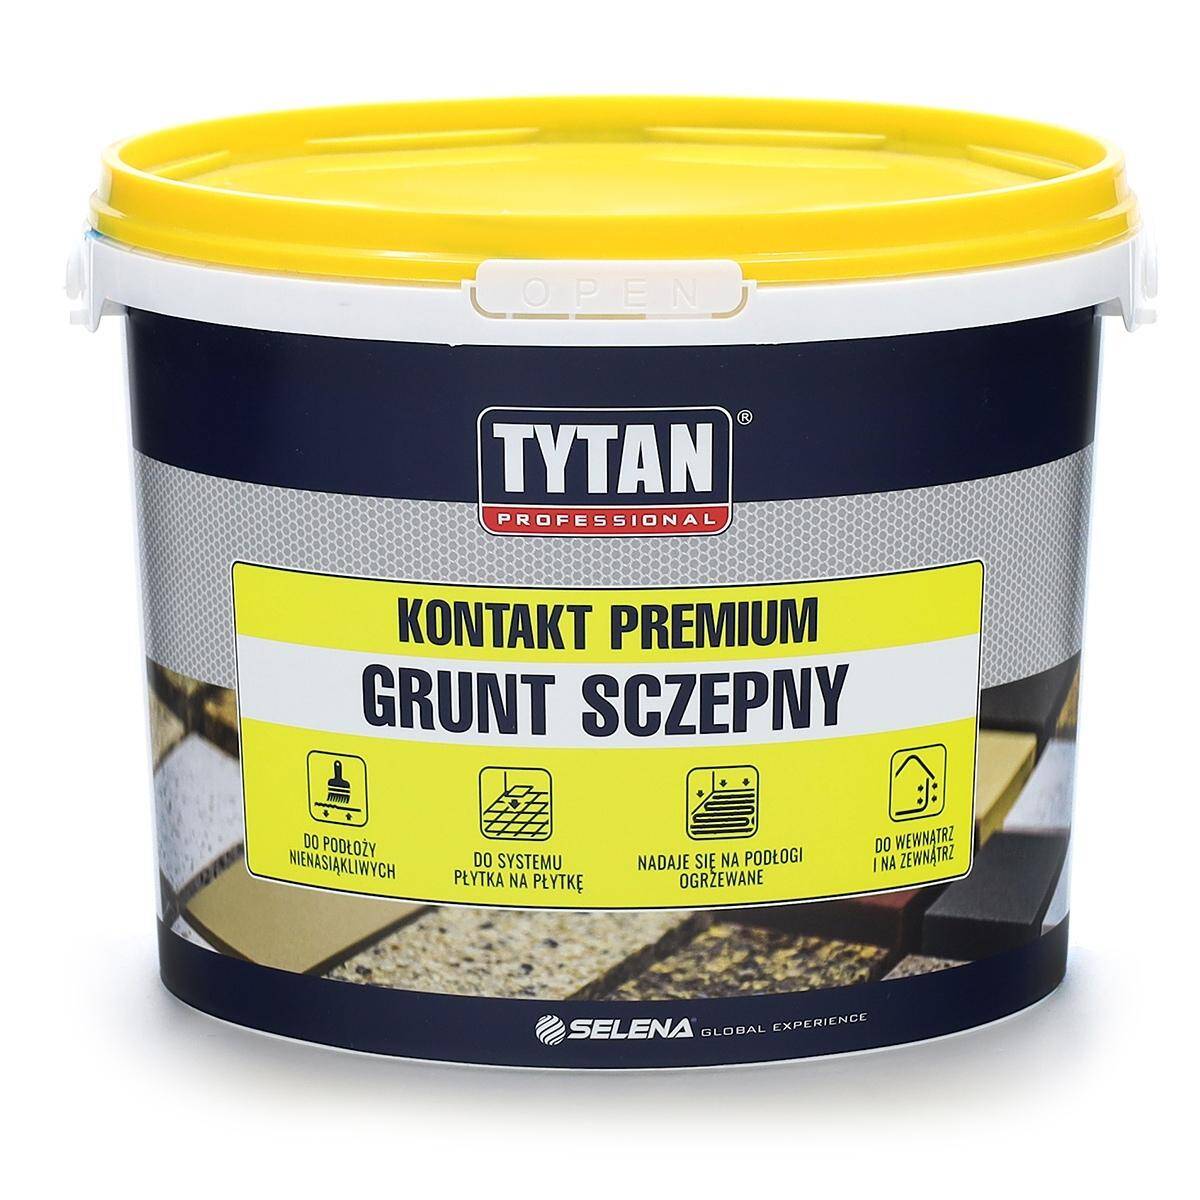 Grunt szczepny kontakt premium 4 kg TYTAN Professional